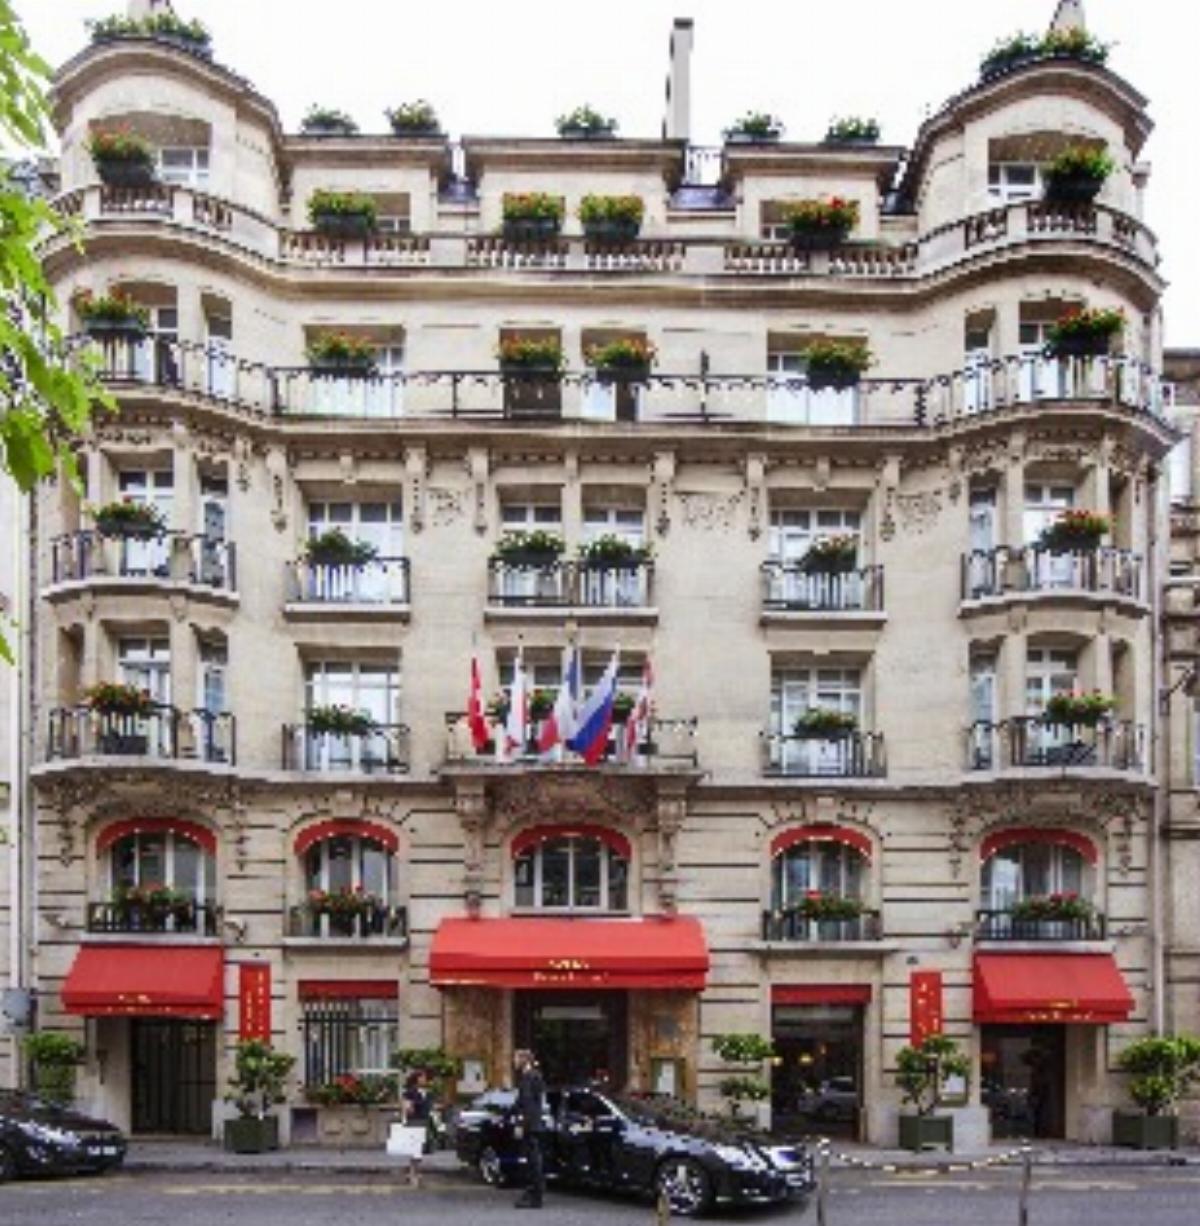 Maison Astor Paris, Curio Collection by Hilton Hotel Paris France